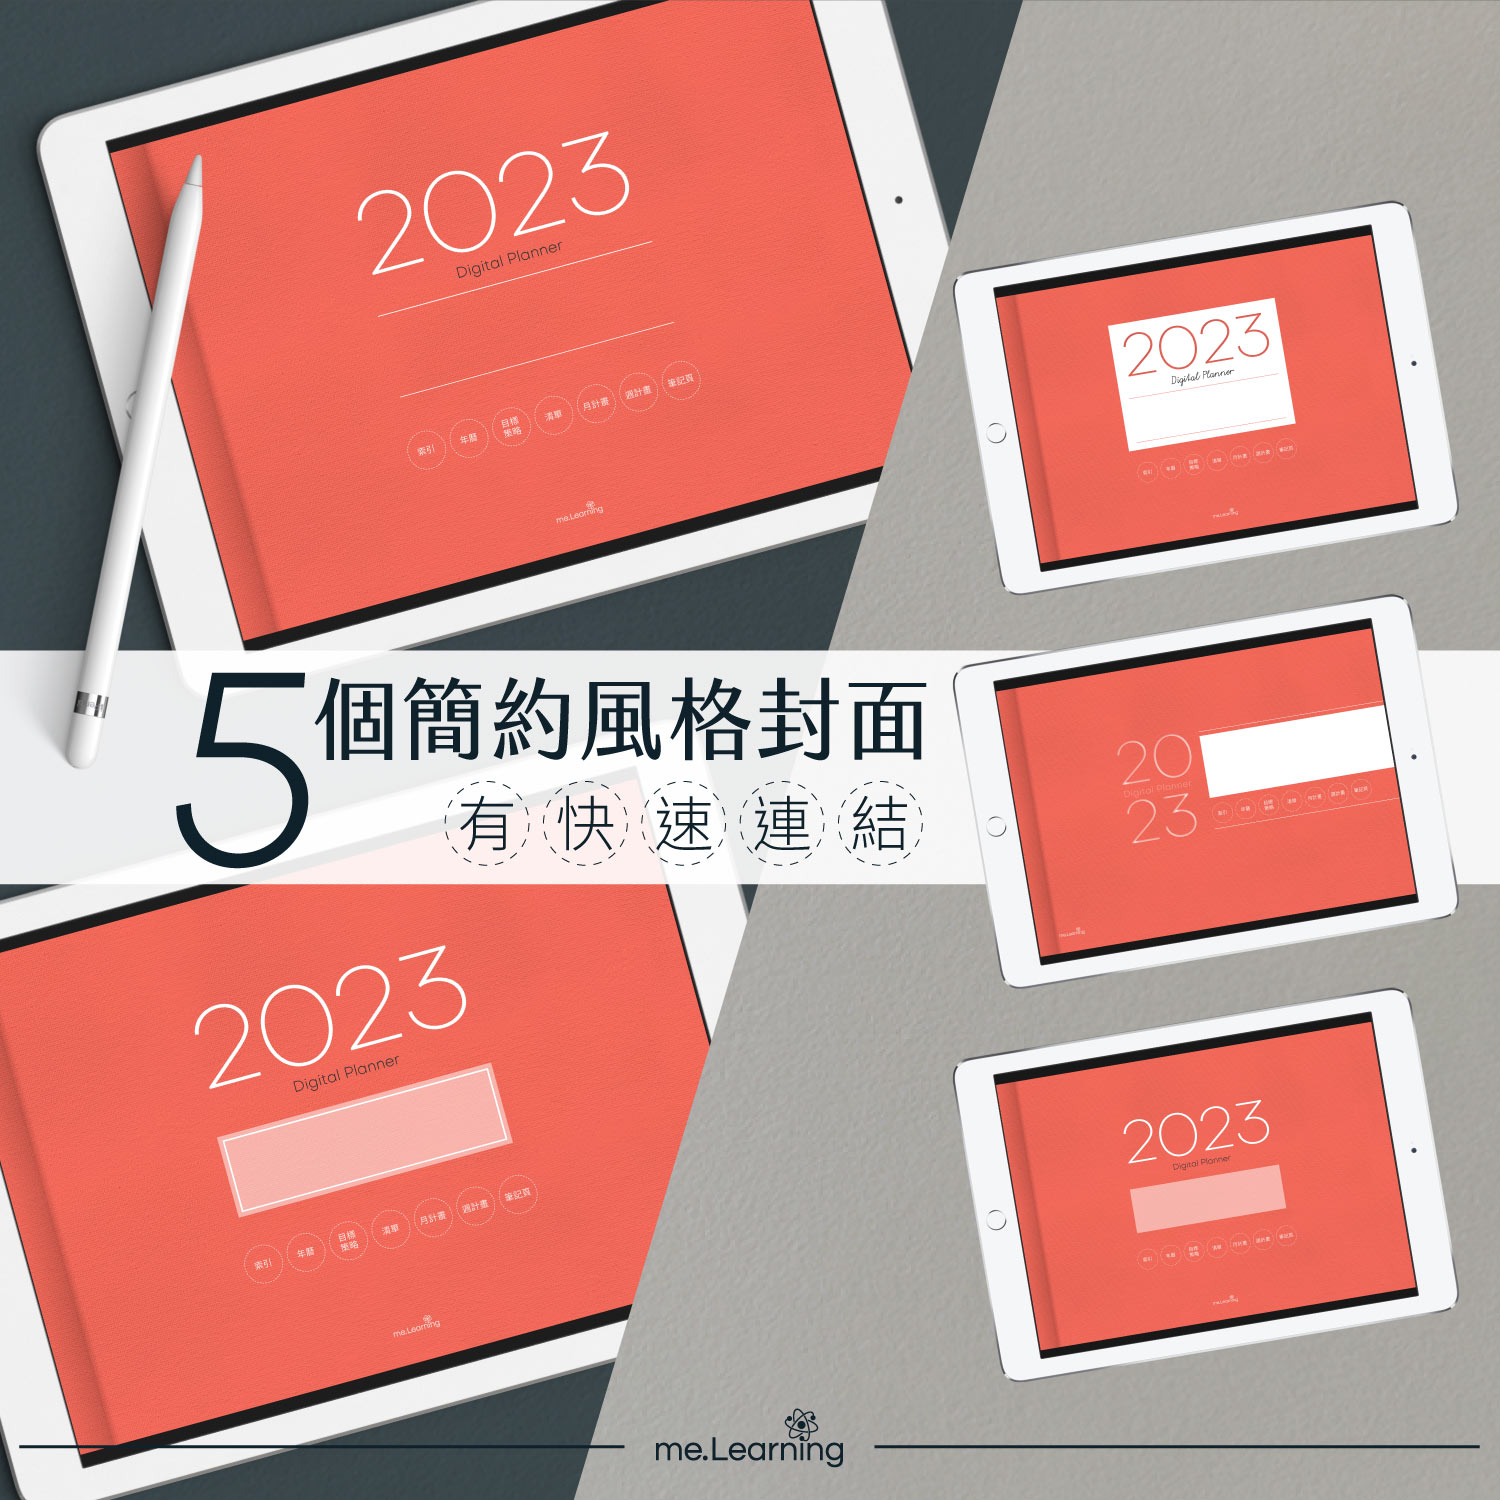 電子行事曆 digital planner 2023-Coral Red-5款封面 | me.Learning